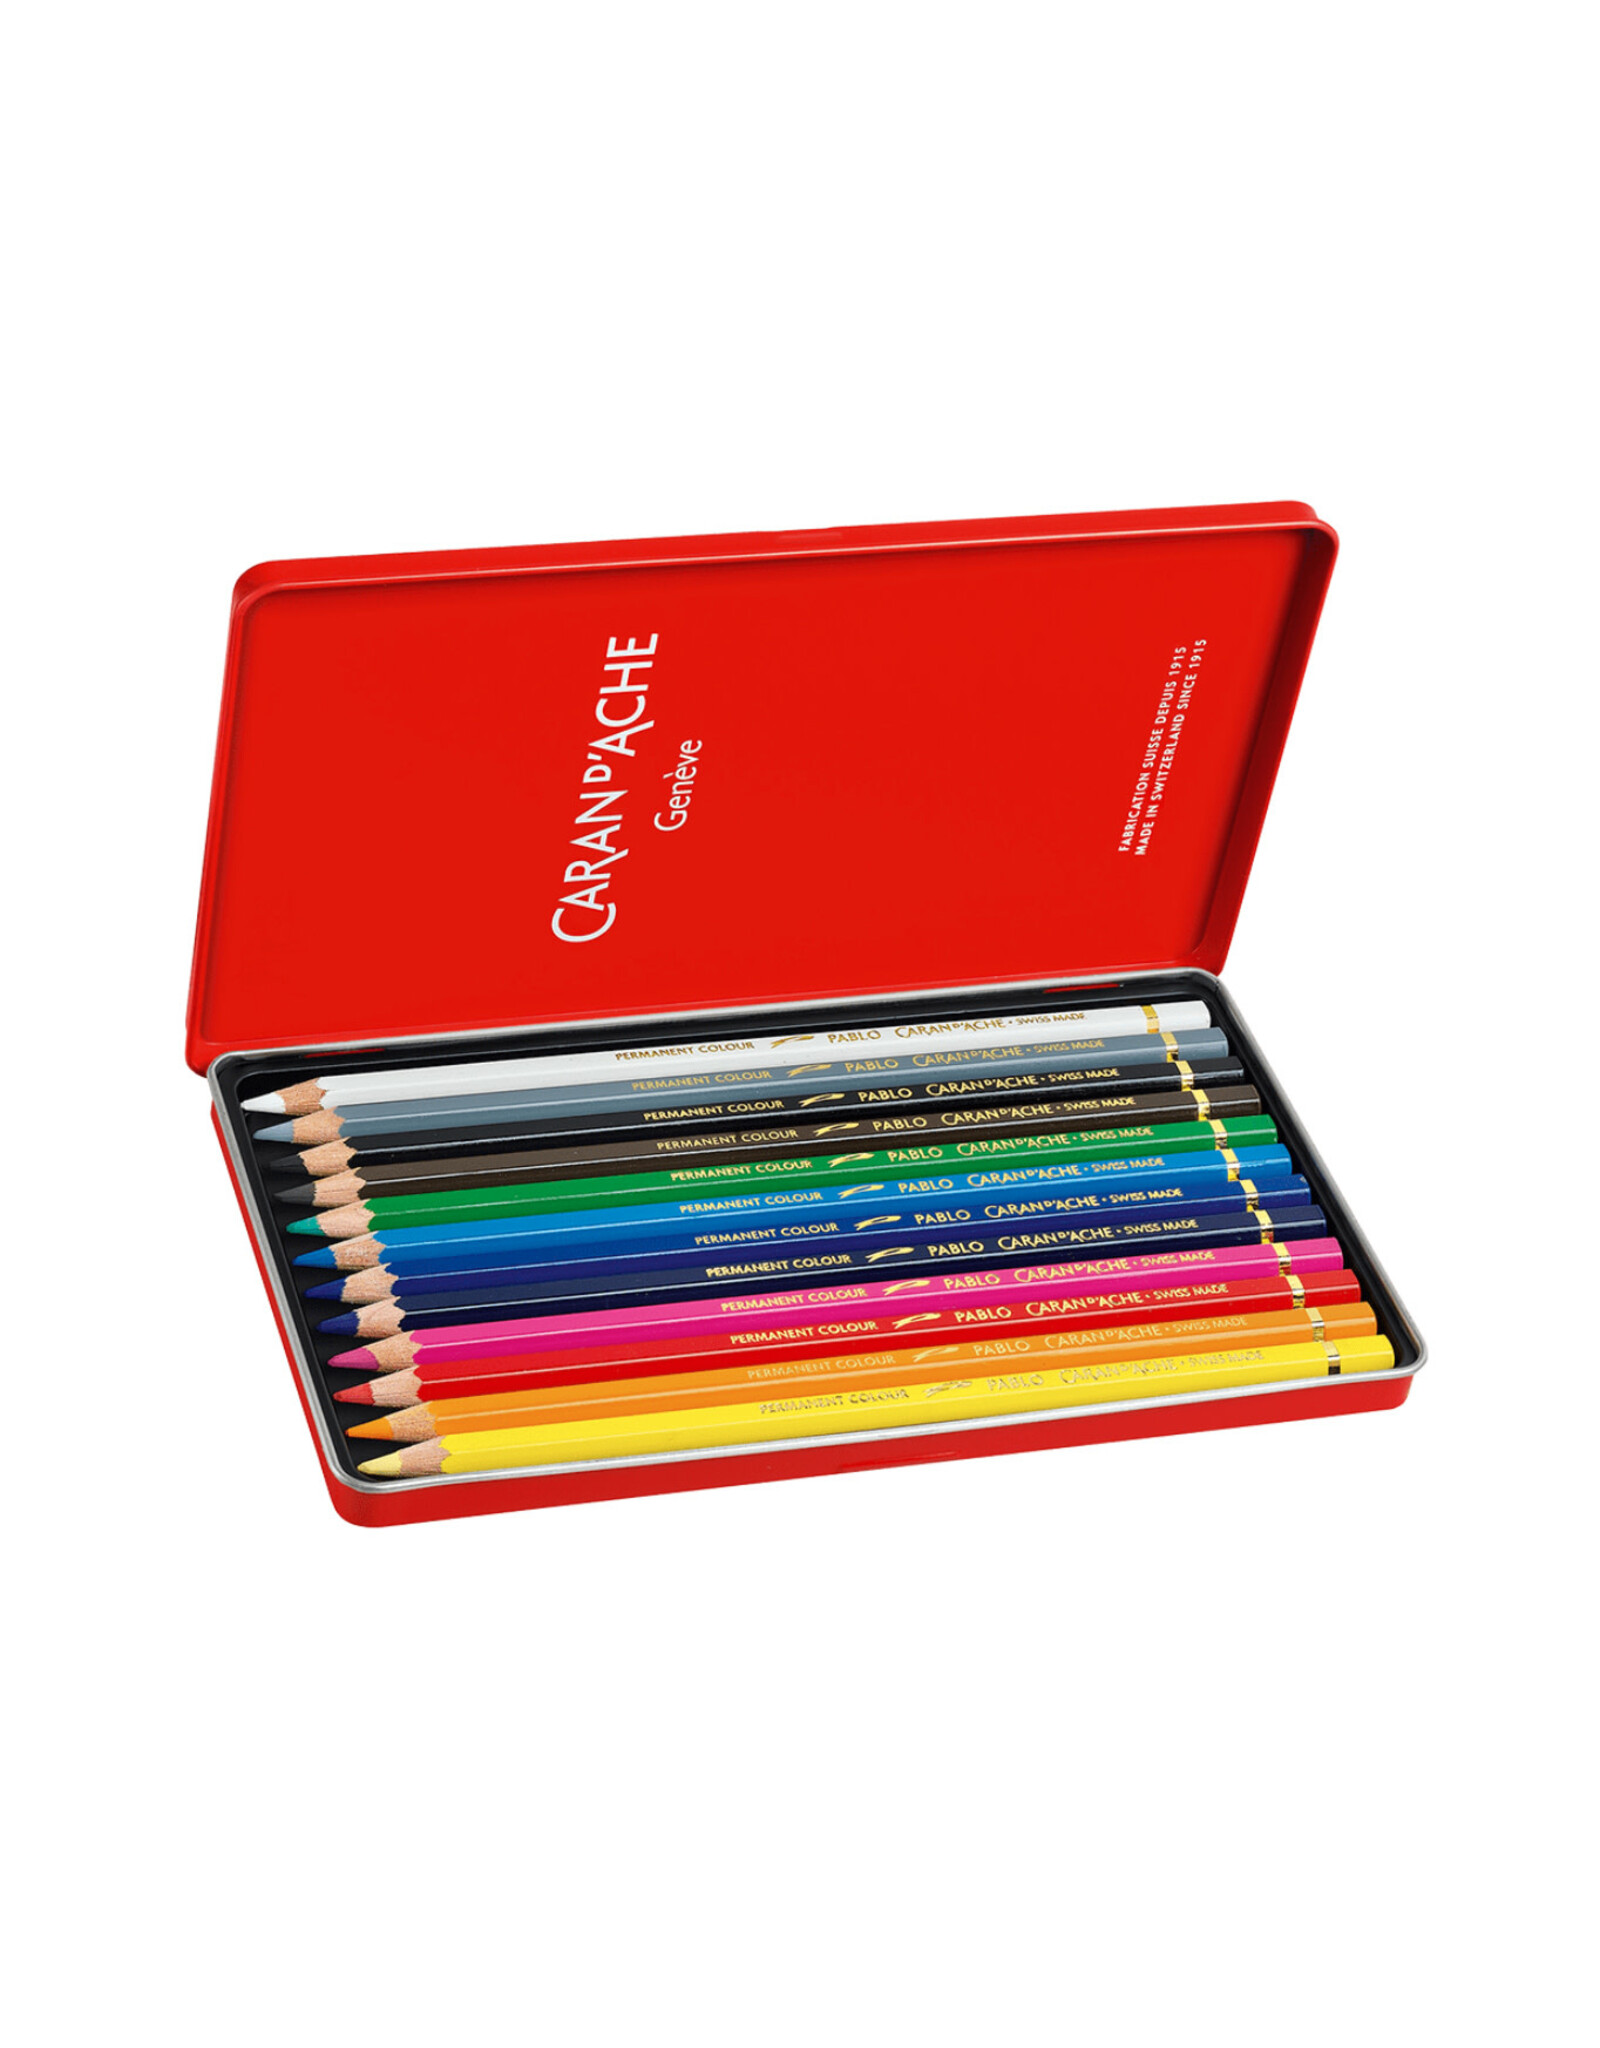 Caran d'Ache Pablo, Metal Box 12 Colour Pencils